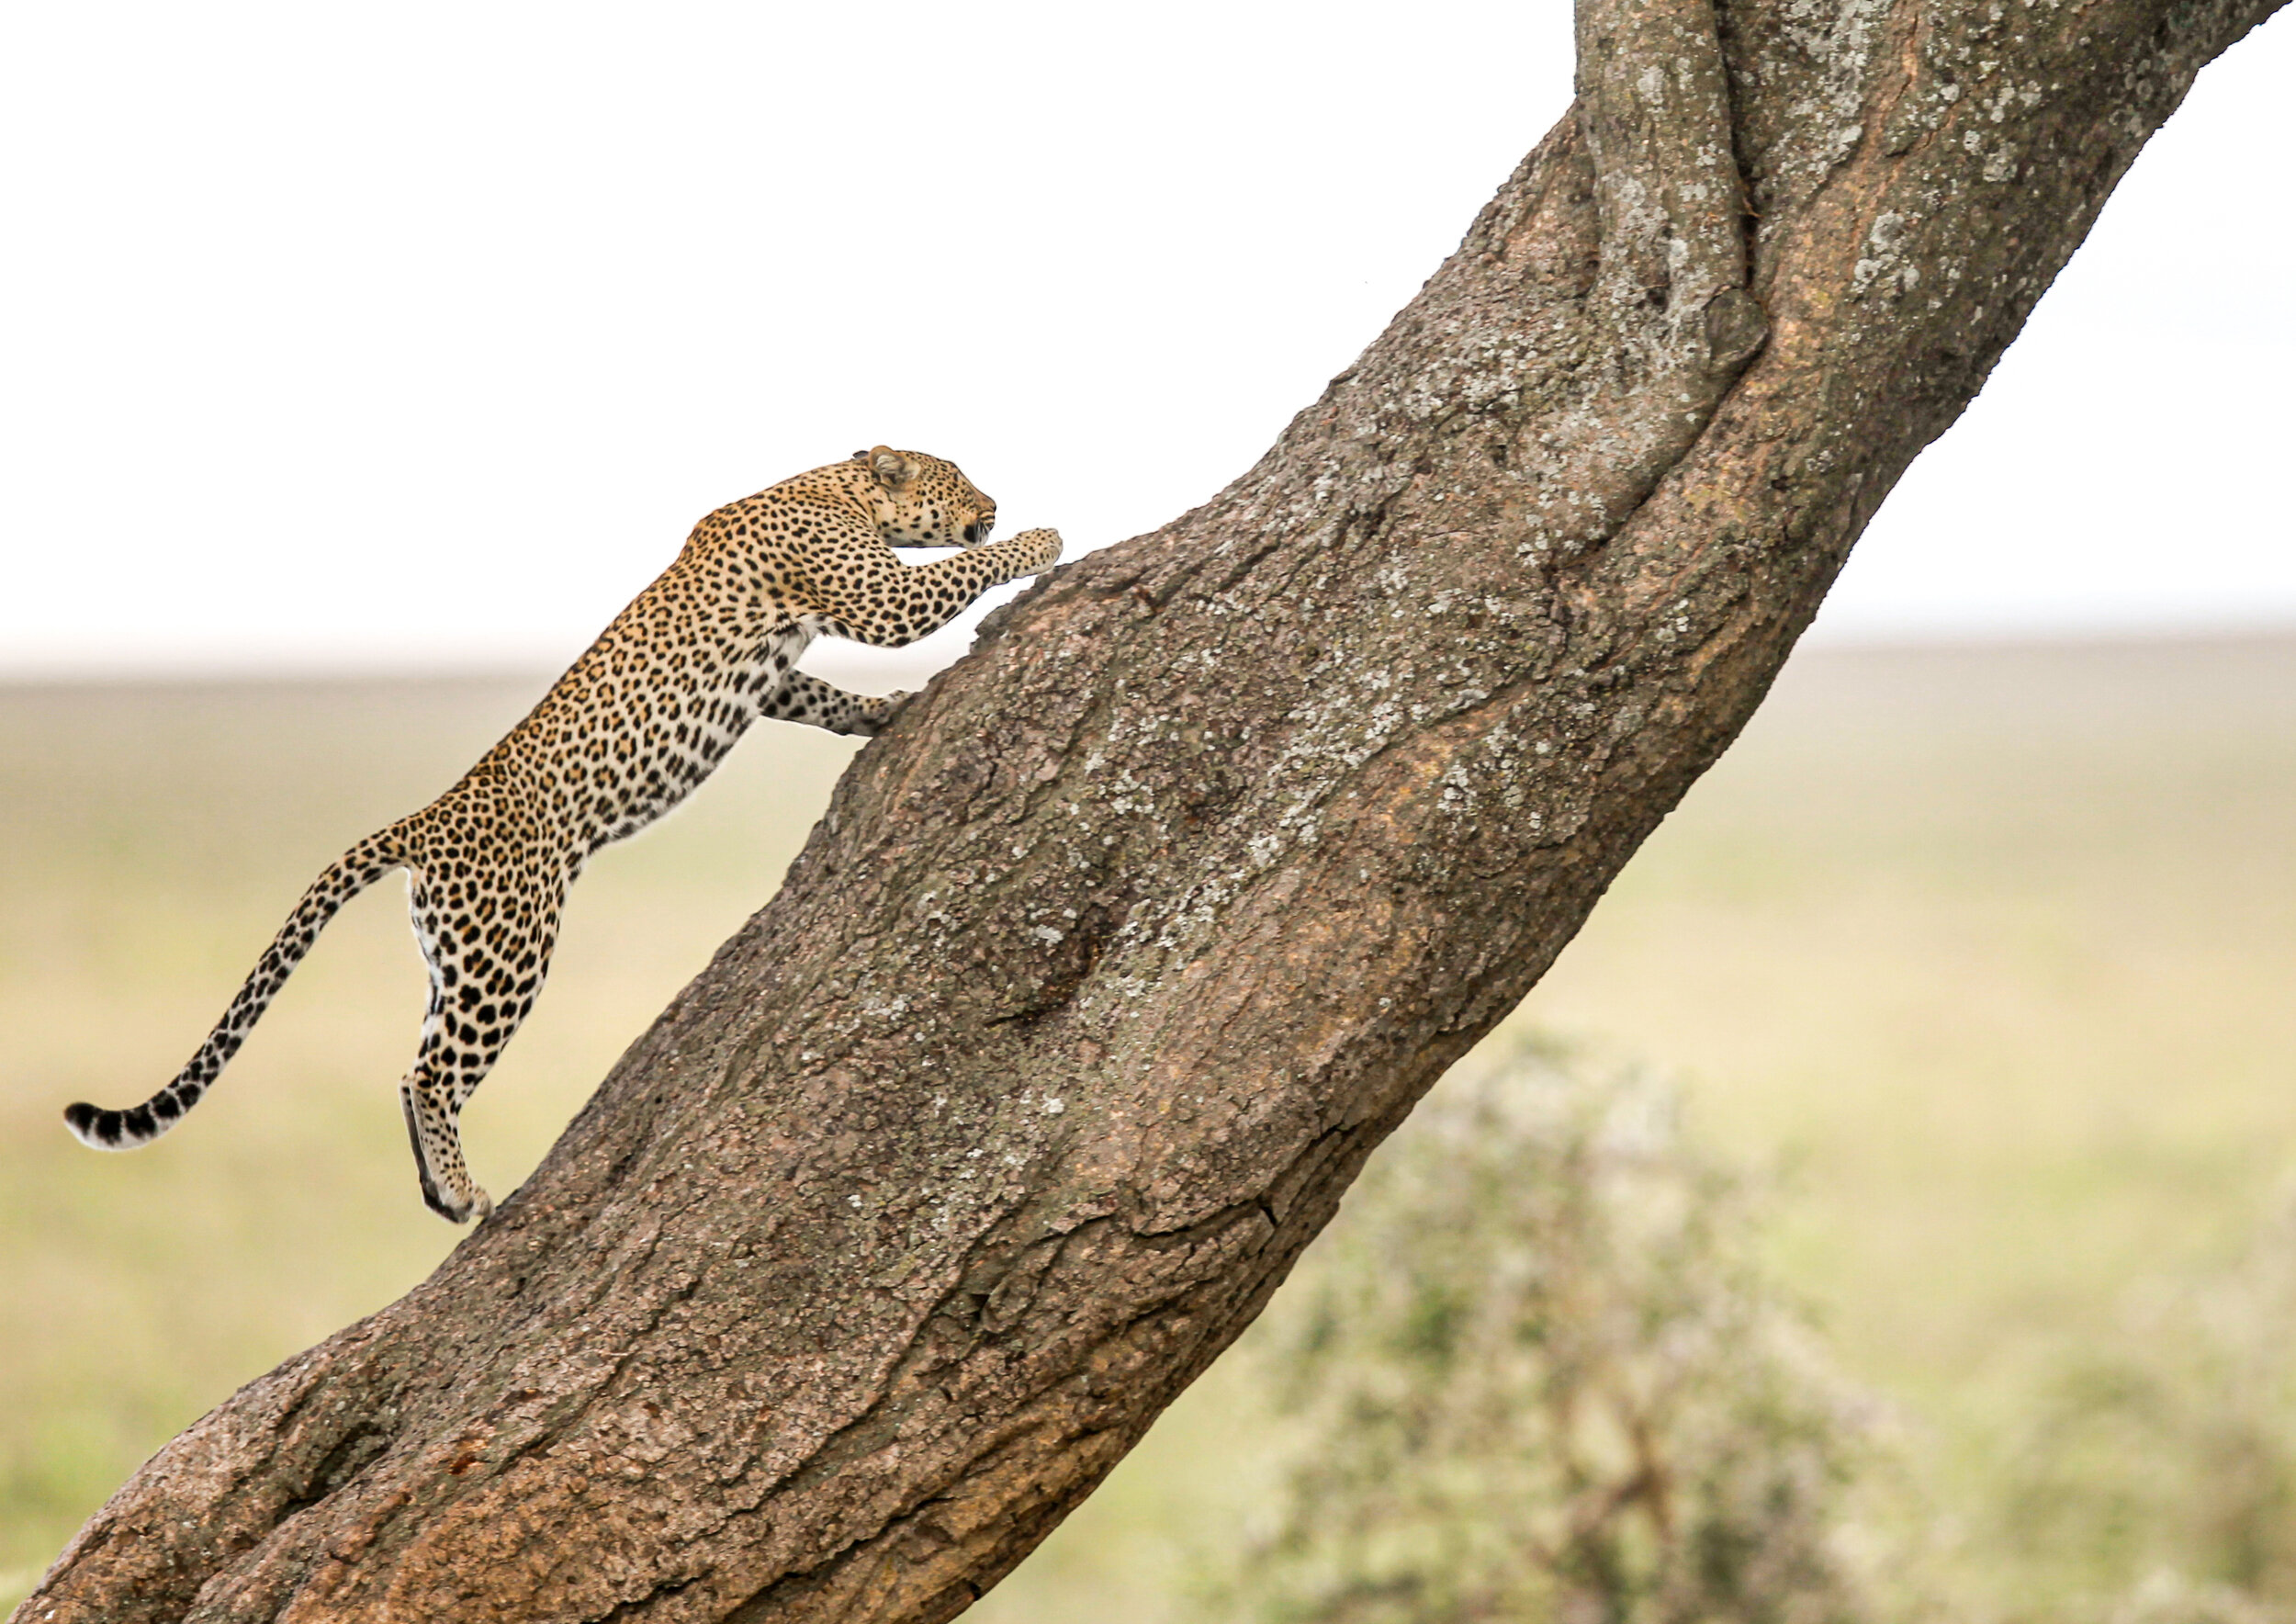 Leopard / Serengeti - Tanzania